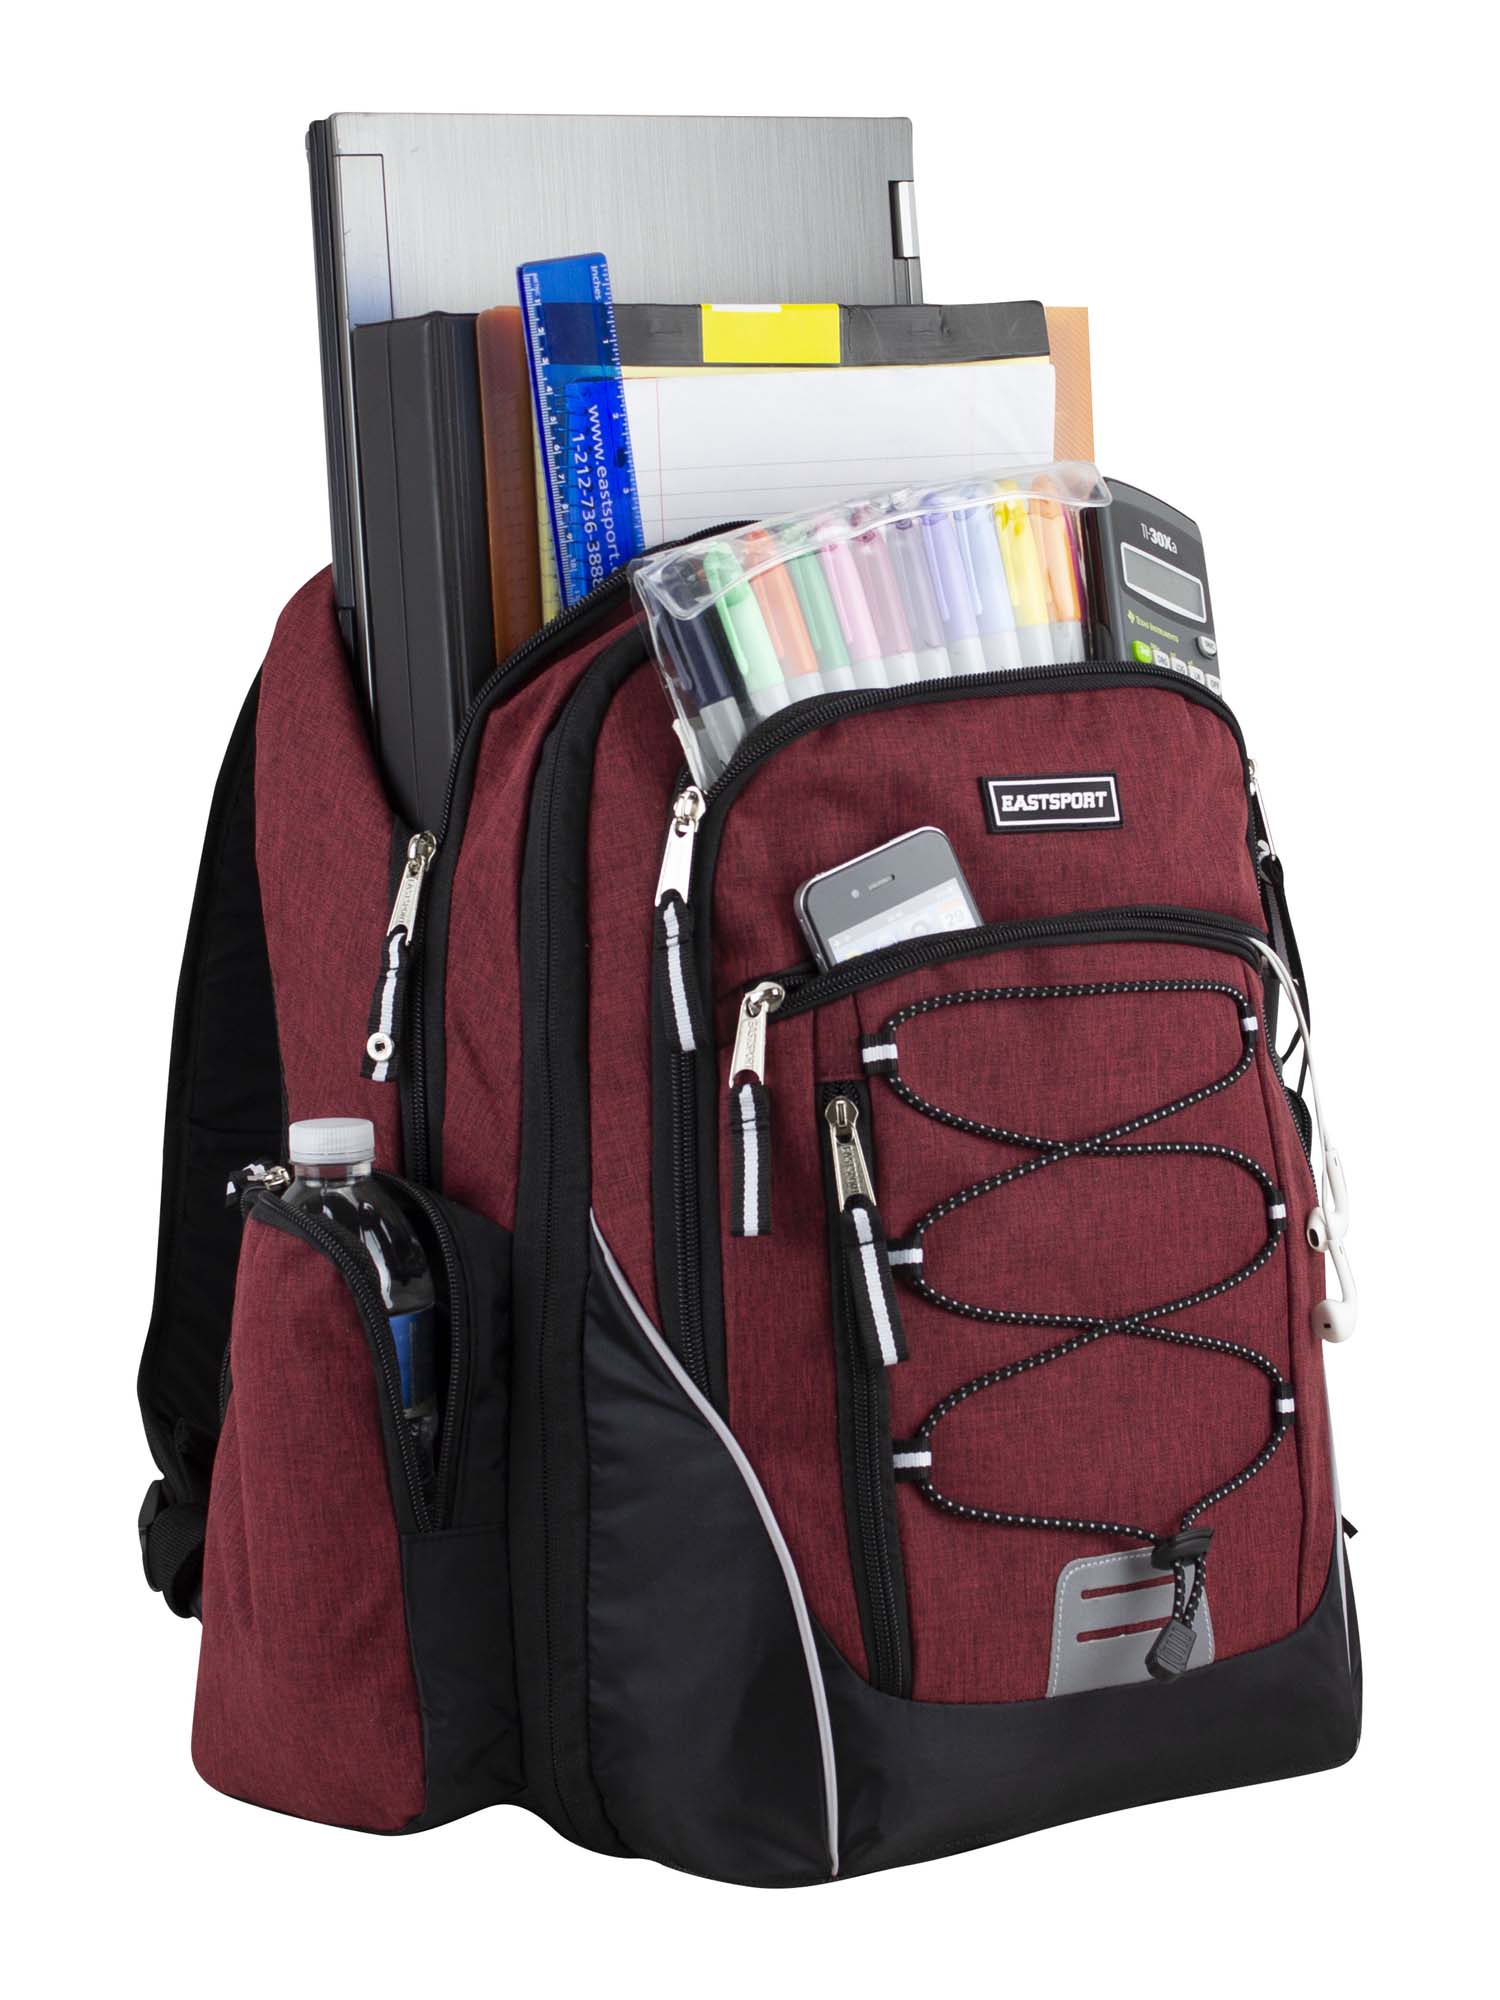 Eastsport Optimus Backpack, Maroon - image 4 of 7